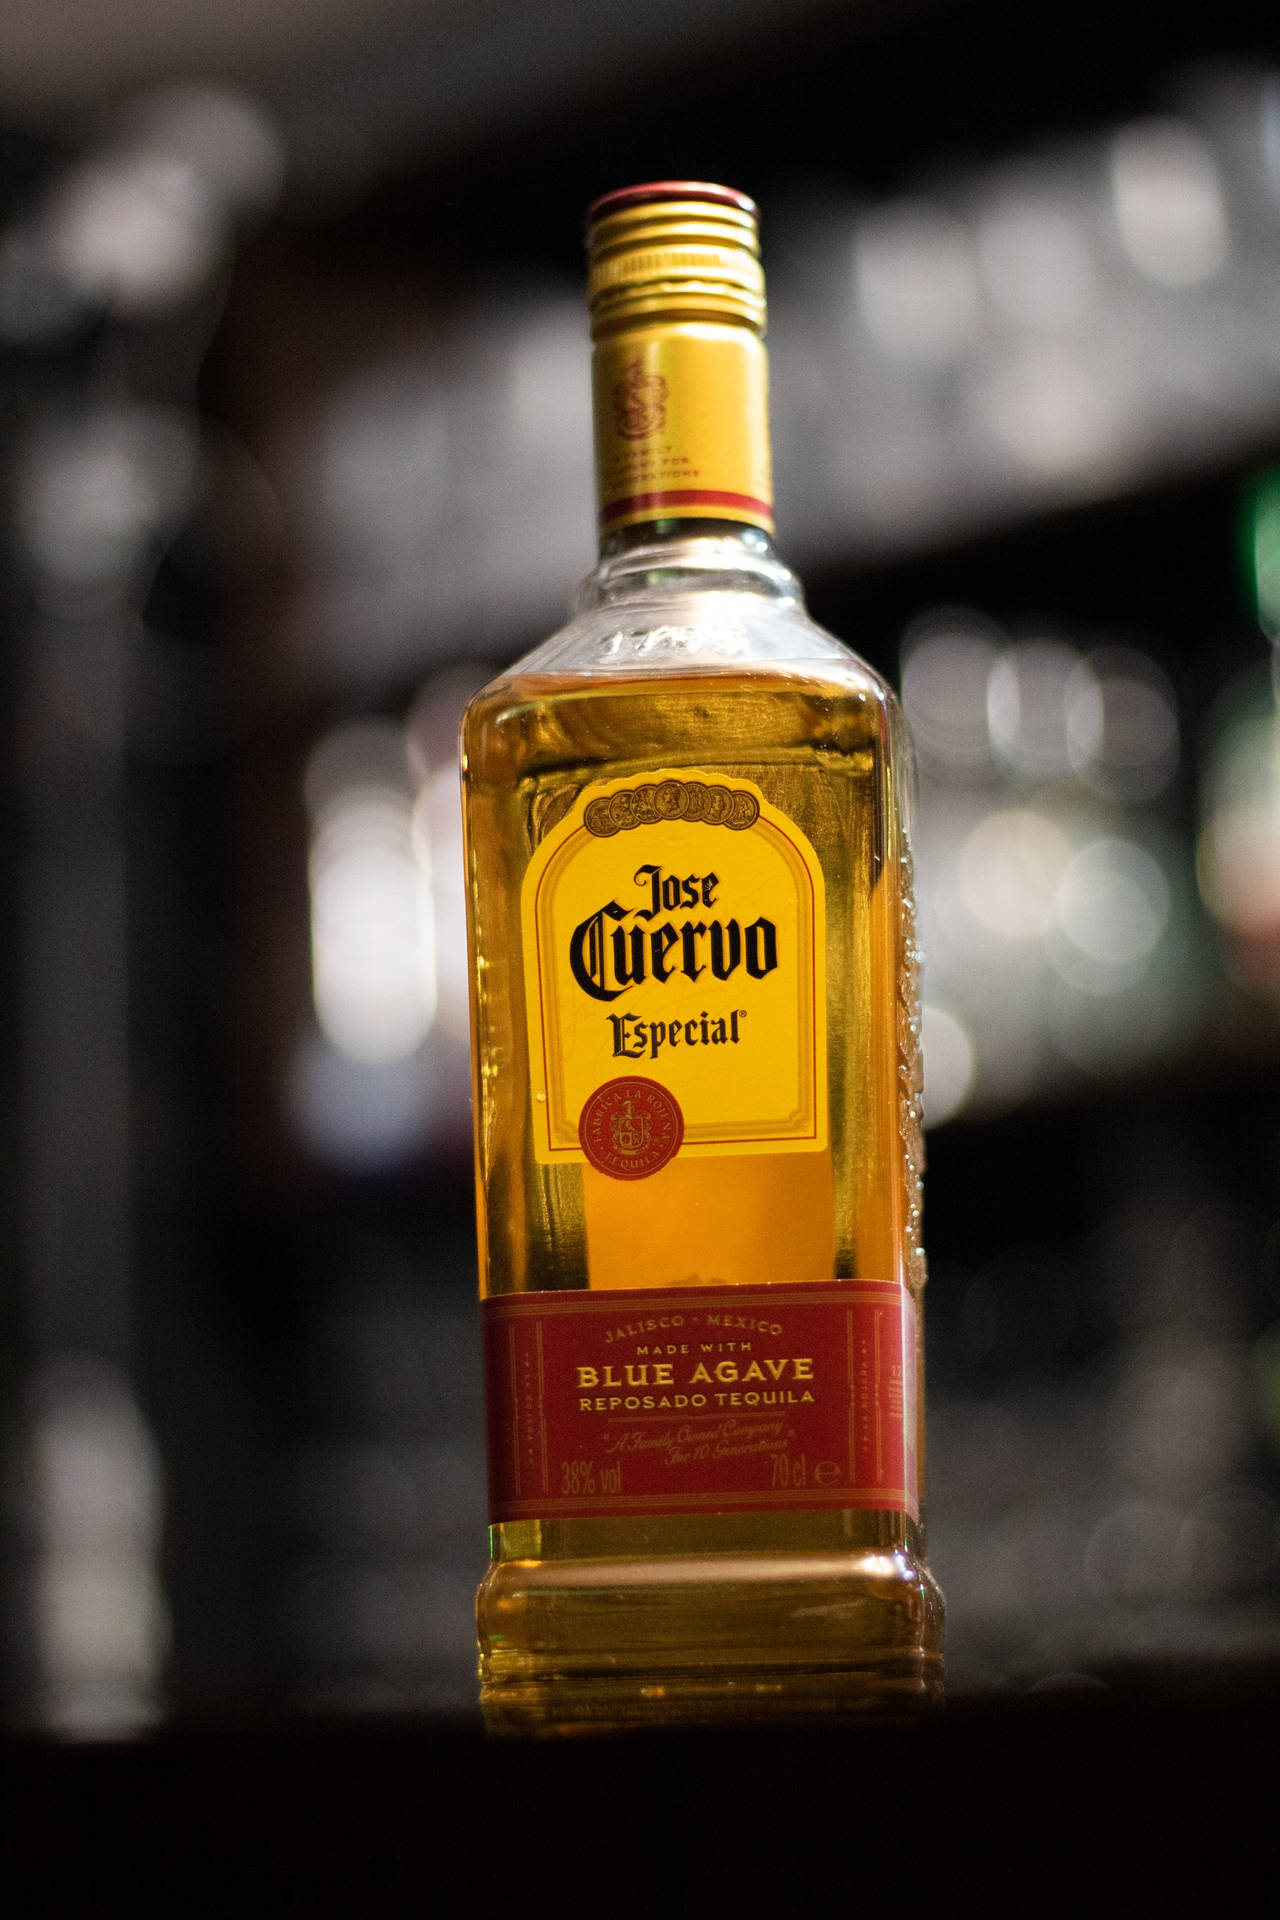 Särskildflaska Jose Cuervo Agave Tequila Som Bakgrundsbild Till Dator Eller Mobiltelefon. Wallpaper